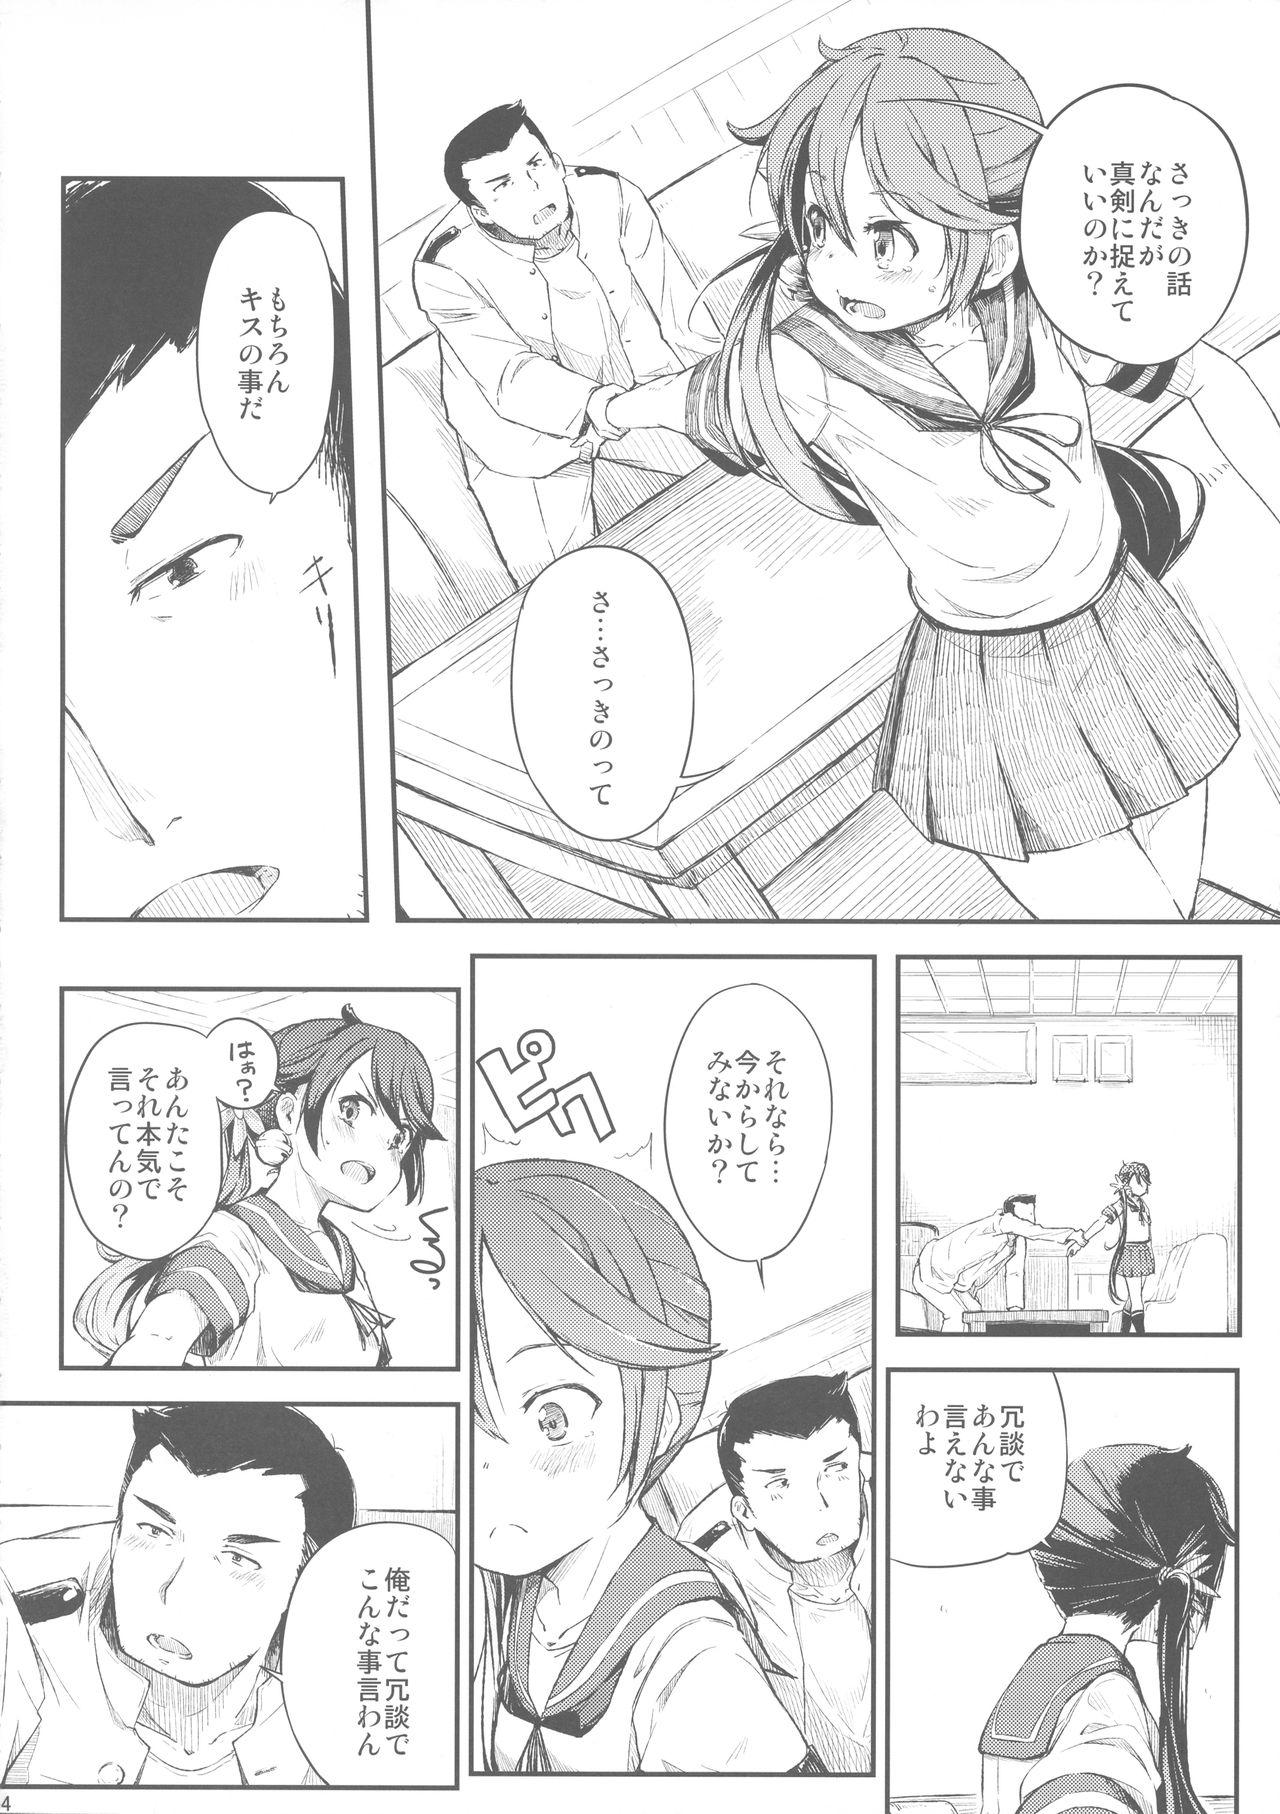 Lez Hardcore Watashi no Kuso Teitoku 3 - Kantai collection Humiliation Pov - Page 5